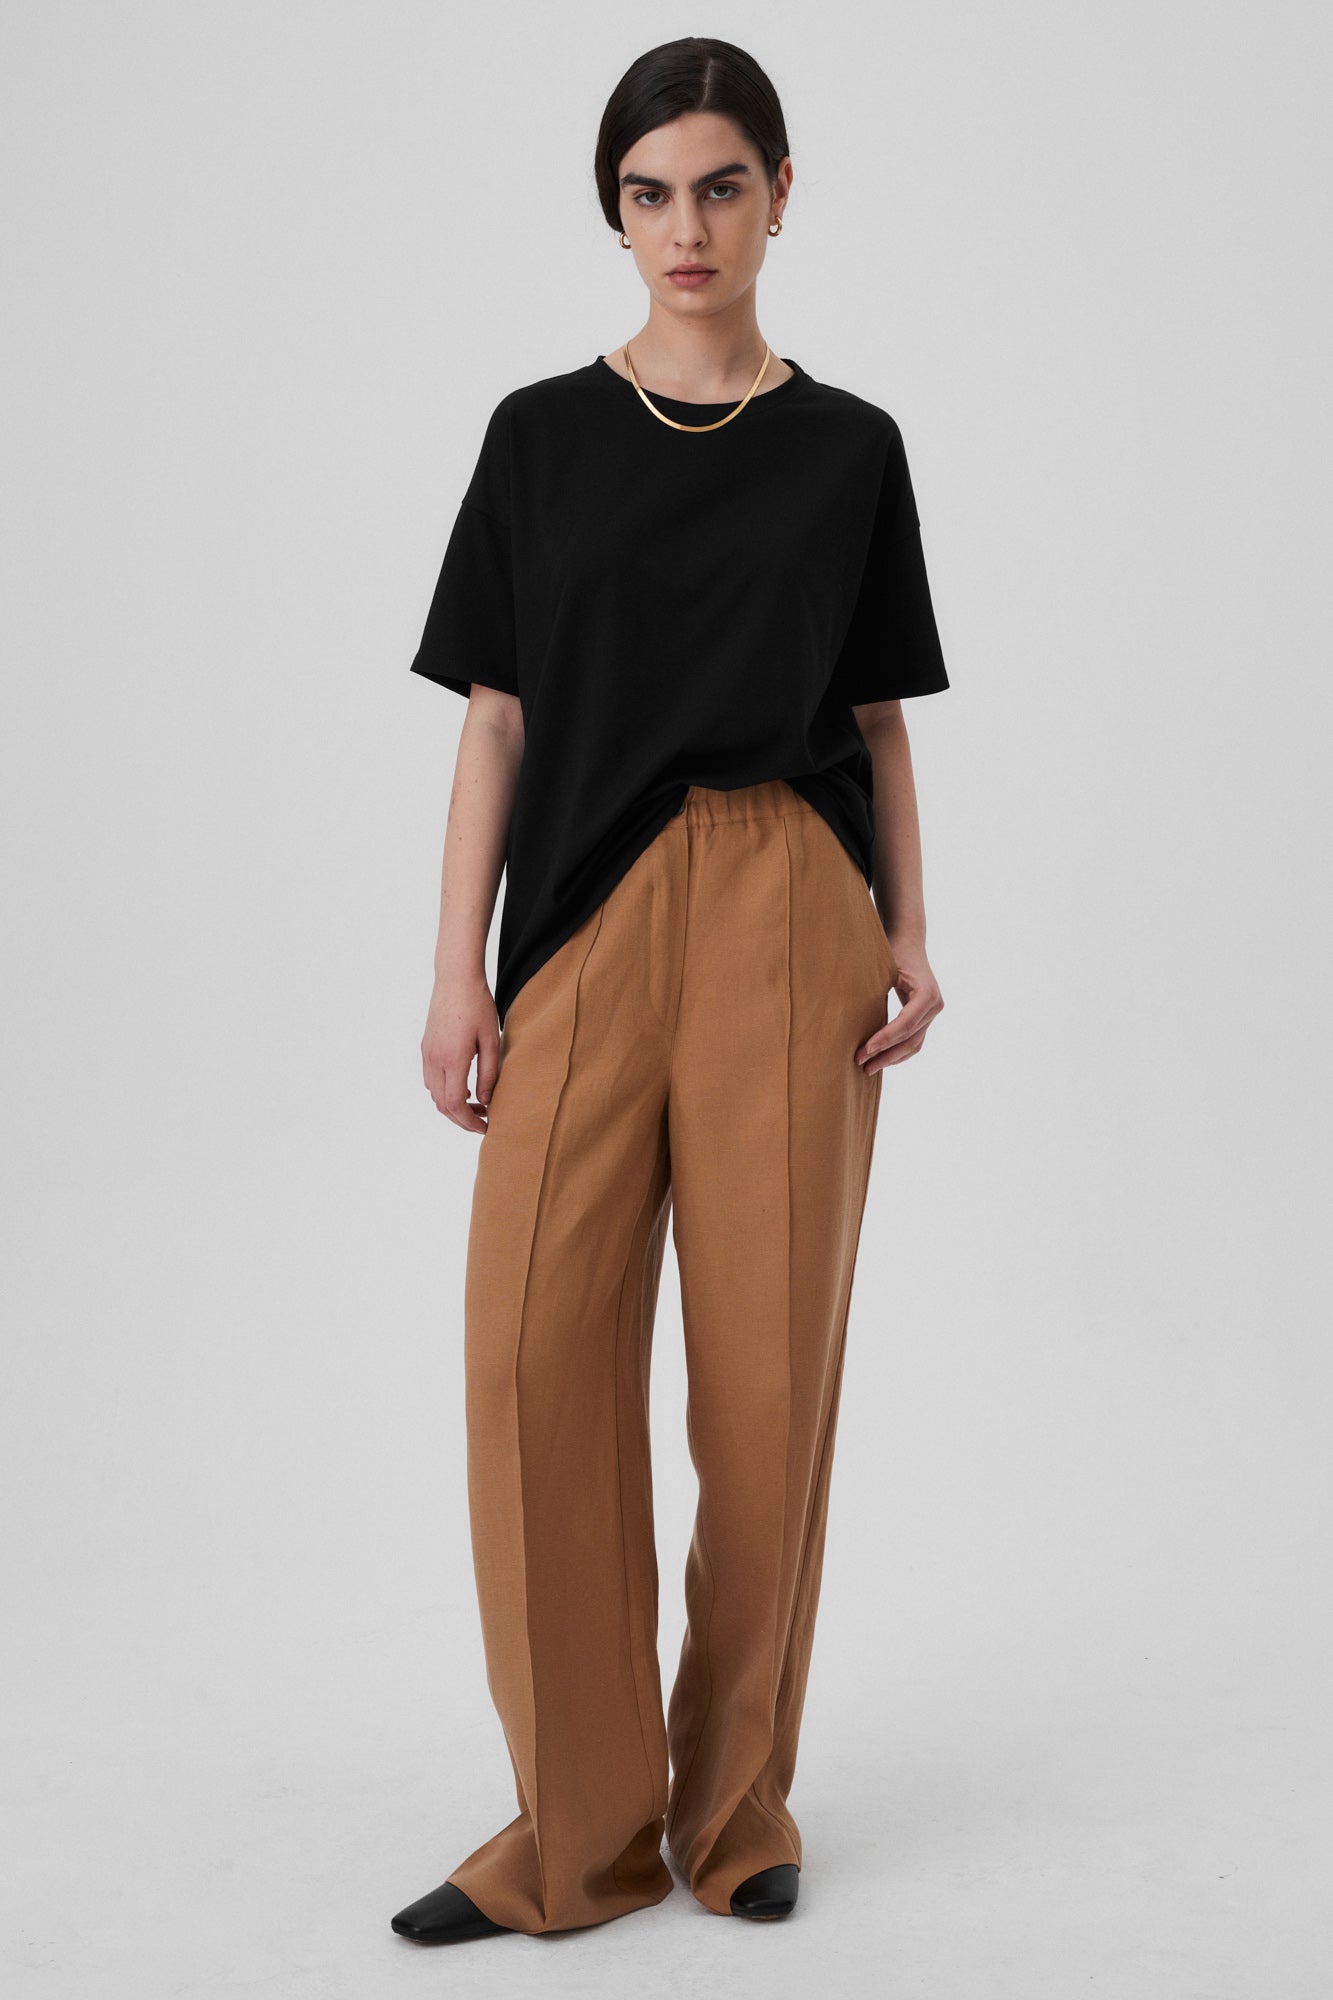 T-shirt z bawełny organicznej / 13 / 02 / onyx black *spodnie-z-tencelu-i-lnu-05-14-savanna* ?Modelka ma 172cm wzrostu i nosi rozmiar XS? |